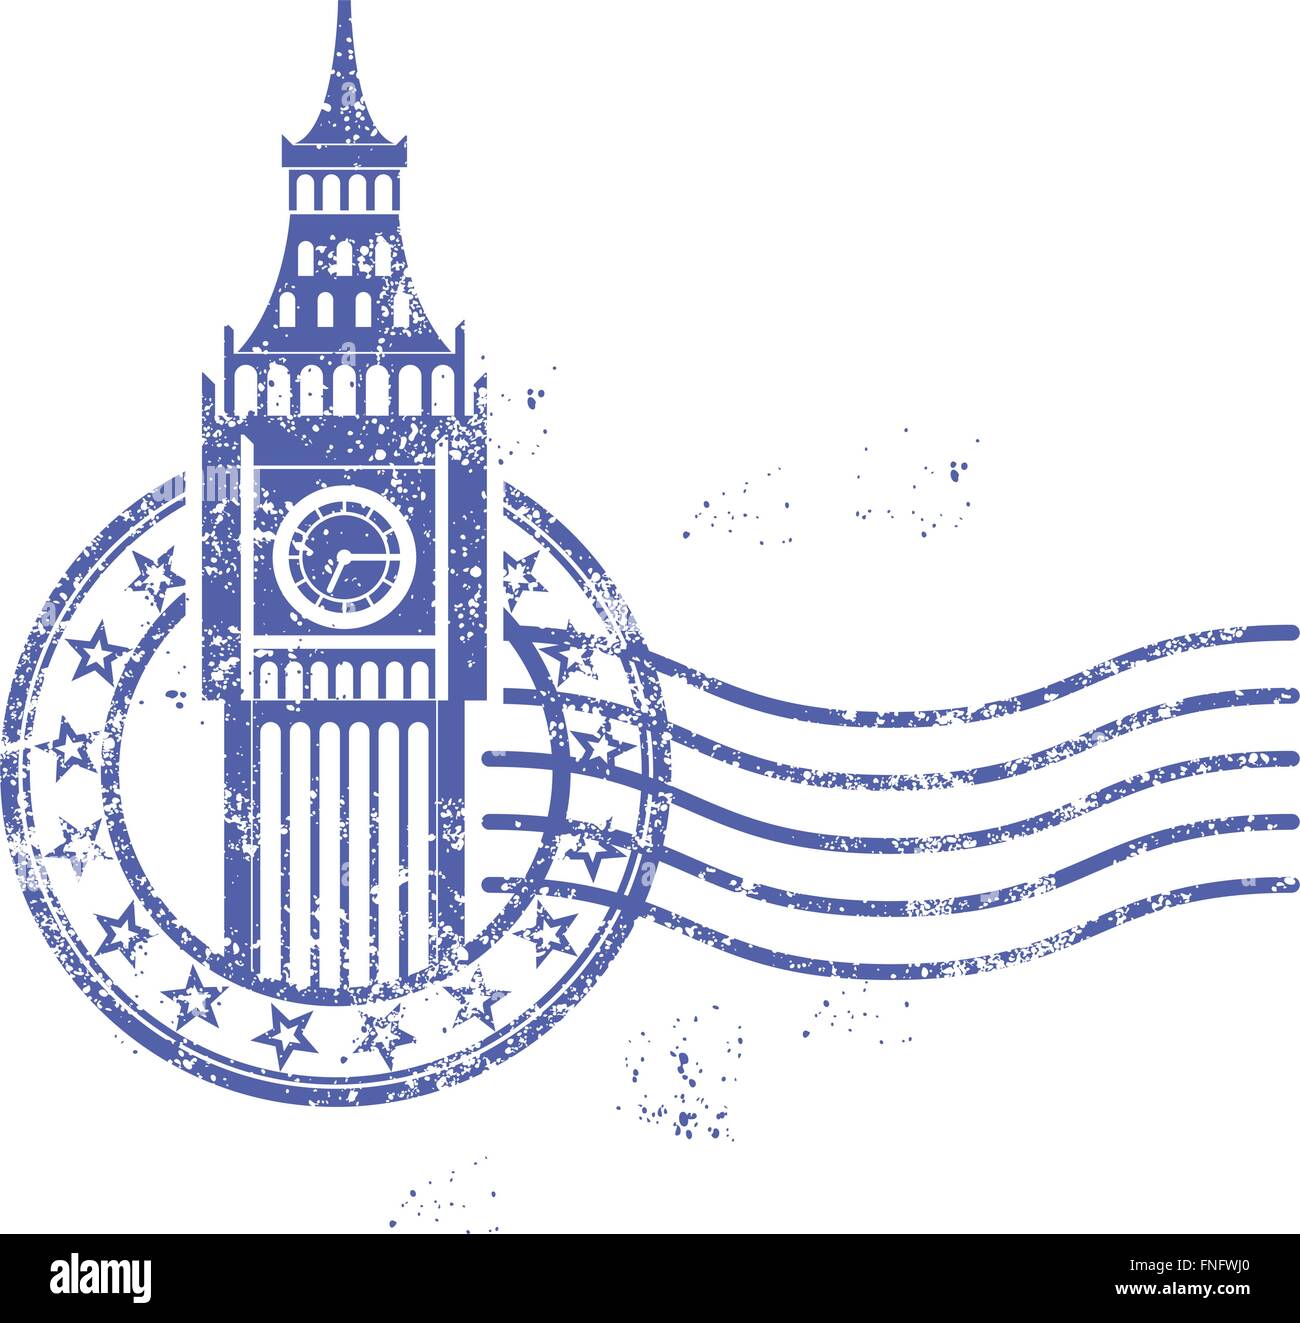 Grunge runden Stempel mit Big Ben - Wahrzeichen von London Stock Vektor